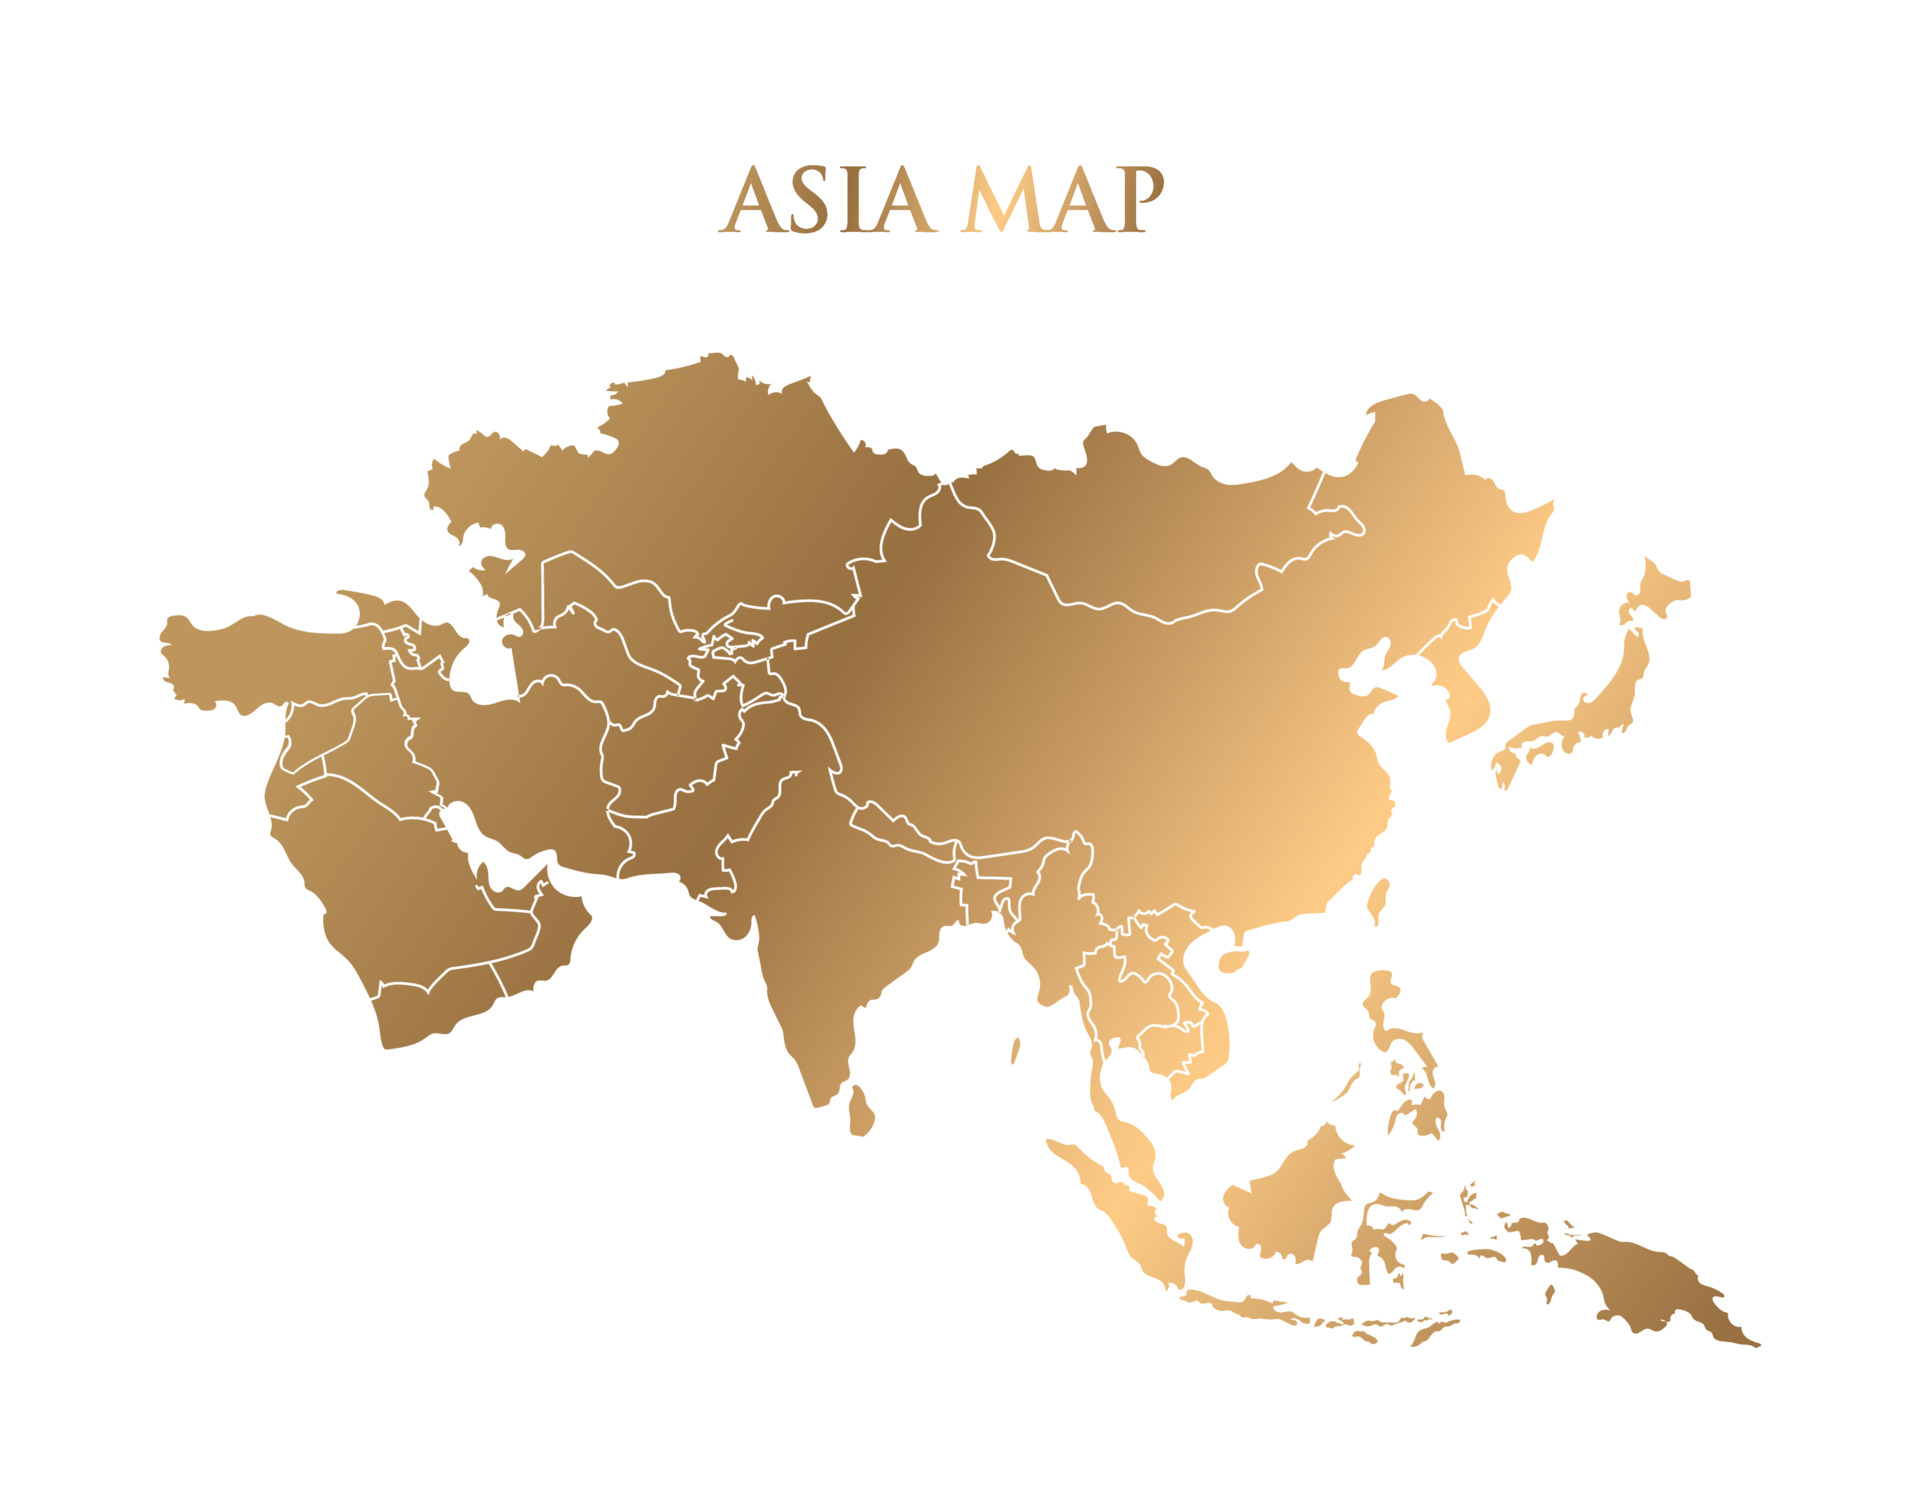 Ten zaczarowany obrazek ukazuje złoty zarys mapy Azji na czystym białym tle, emanujący elegancją i prestiżem. Złocisty kontur subtelnie podkreśla znaczenie tego kontynentu jako miejsca bogatej historii, kultury i wpływów, przywołując jednocześnie wspaniałe dziedzictwo Azji i jej niezwykłe piękno geograficzne.